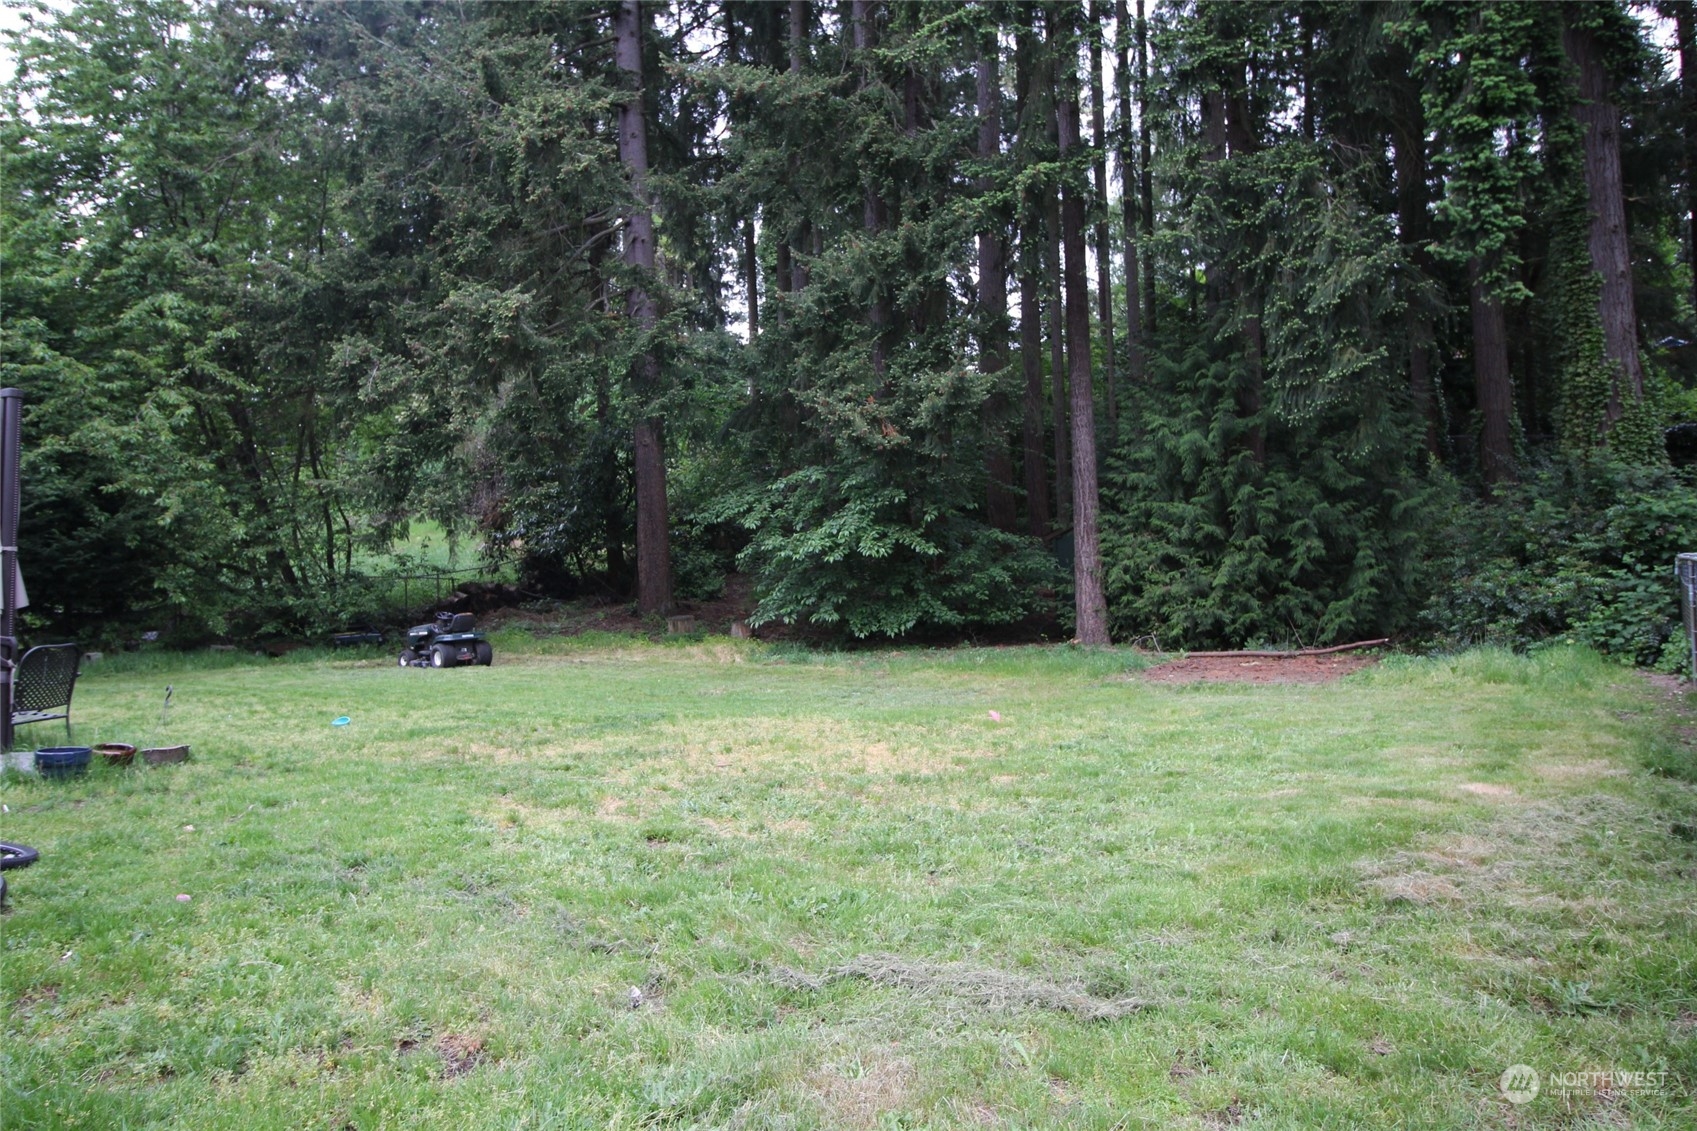 a view of a backyard